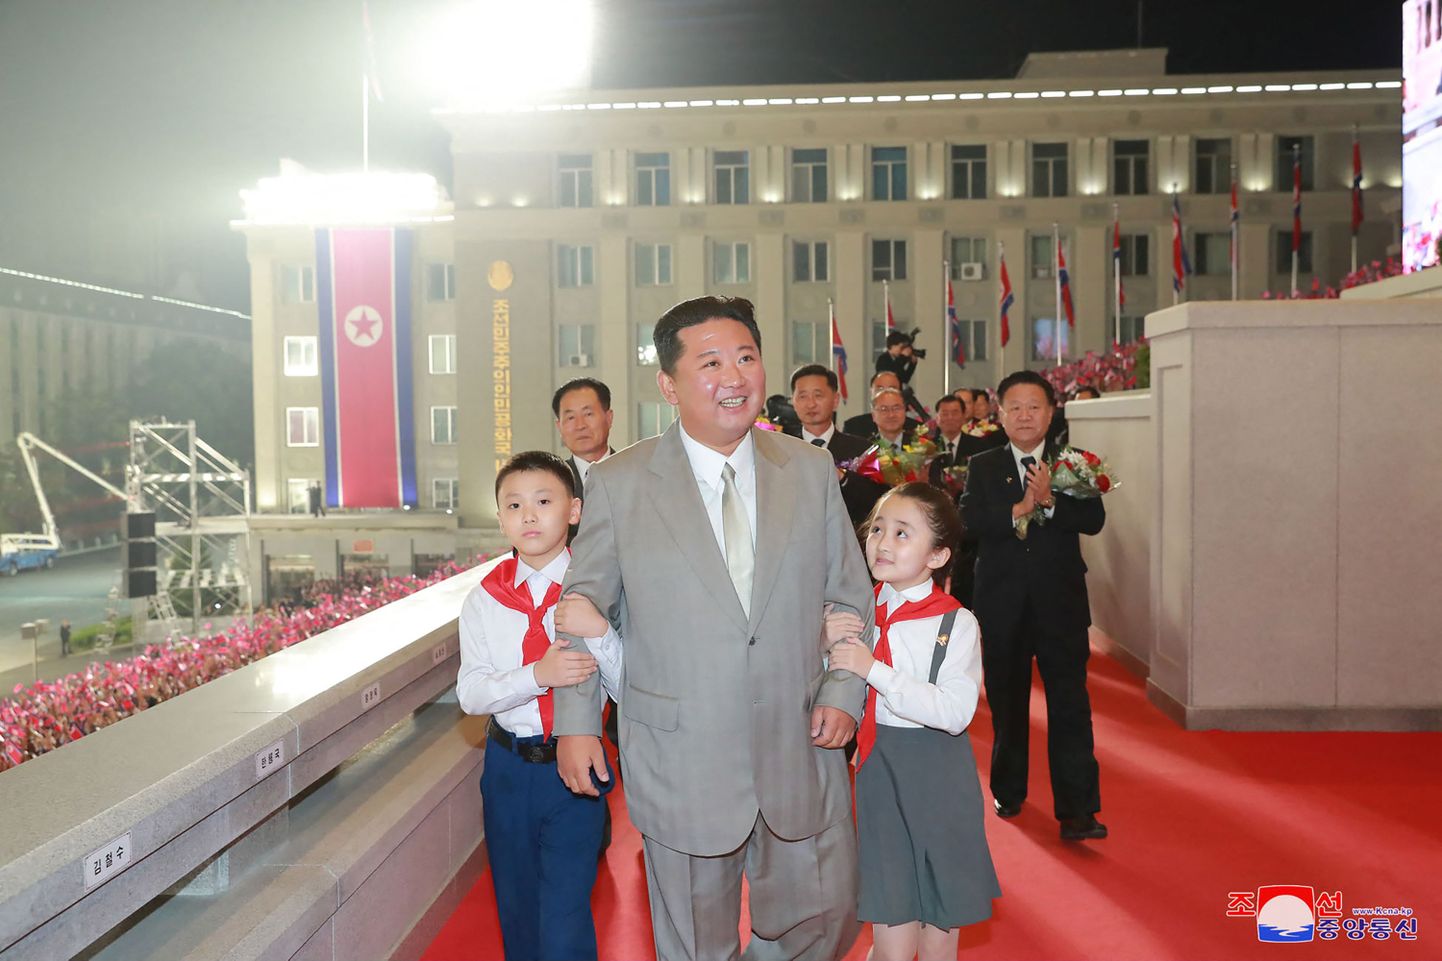 Põhja-Korea tähistati täna öösel riigi asutamise 73. aastapäeva. Kohal oli ka märgatavalt kõhnem riigijuht Kim Jong-un